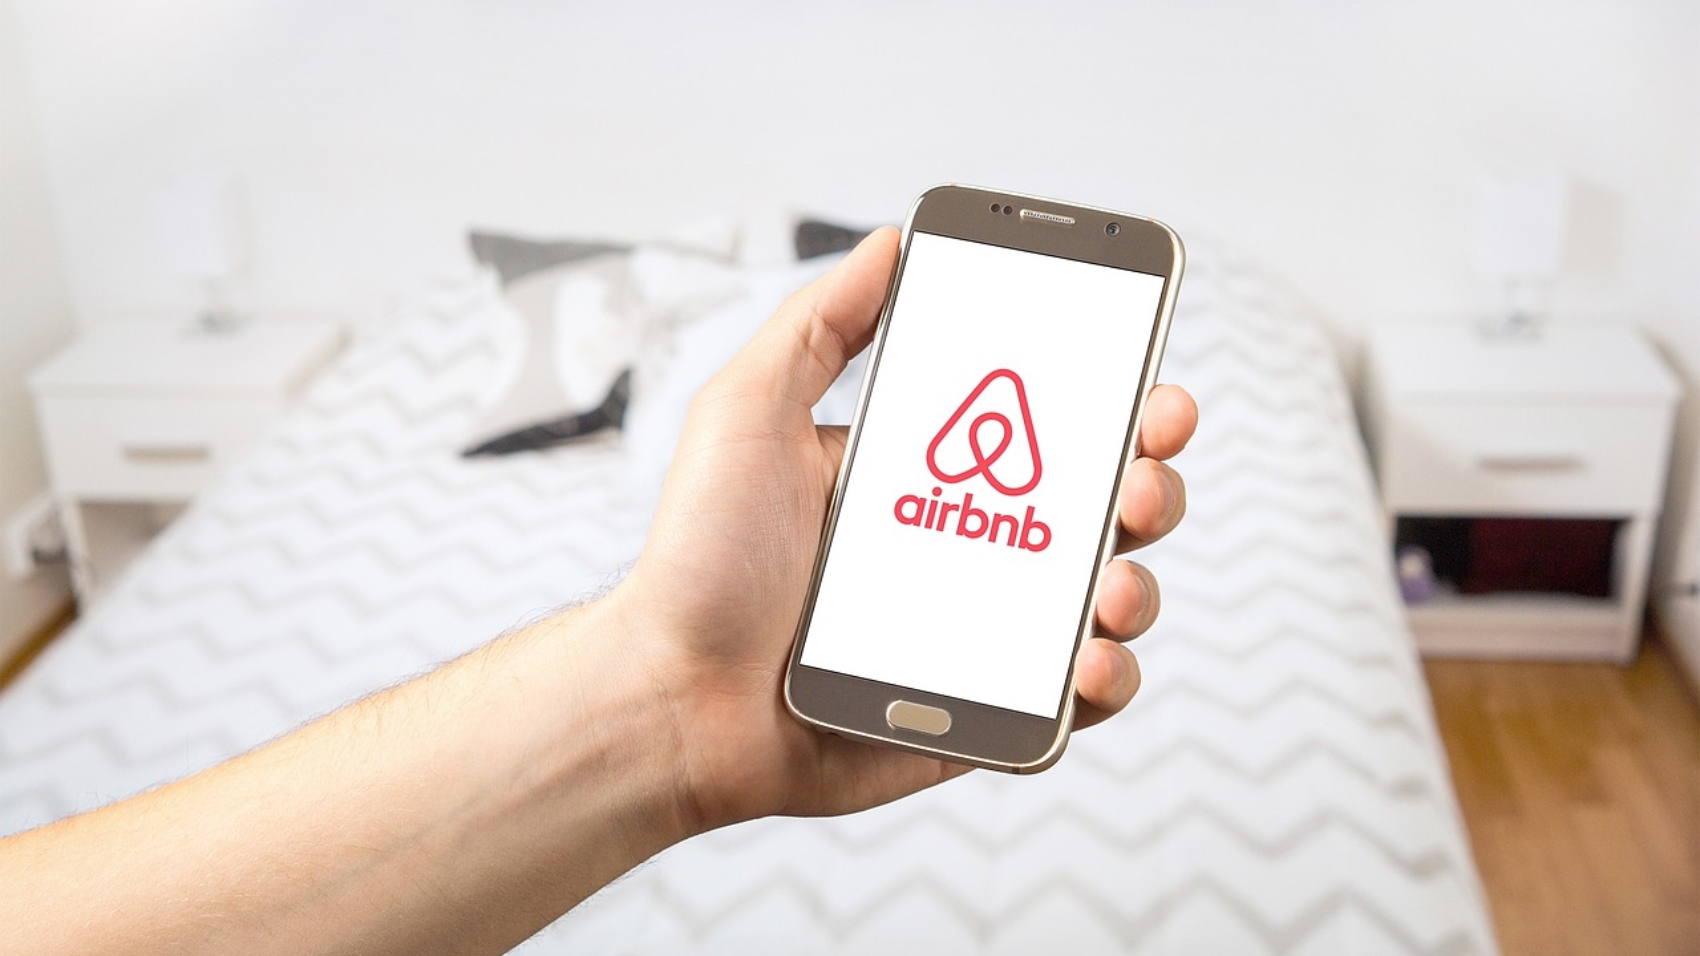 caso airbnb come mercato cambia umberto macchi